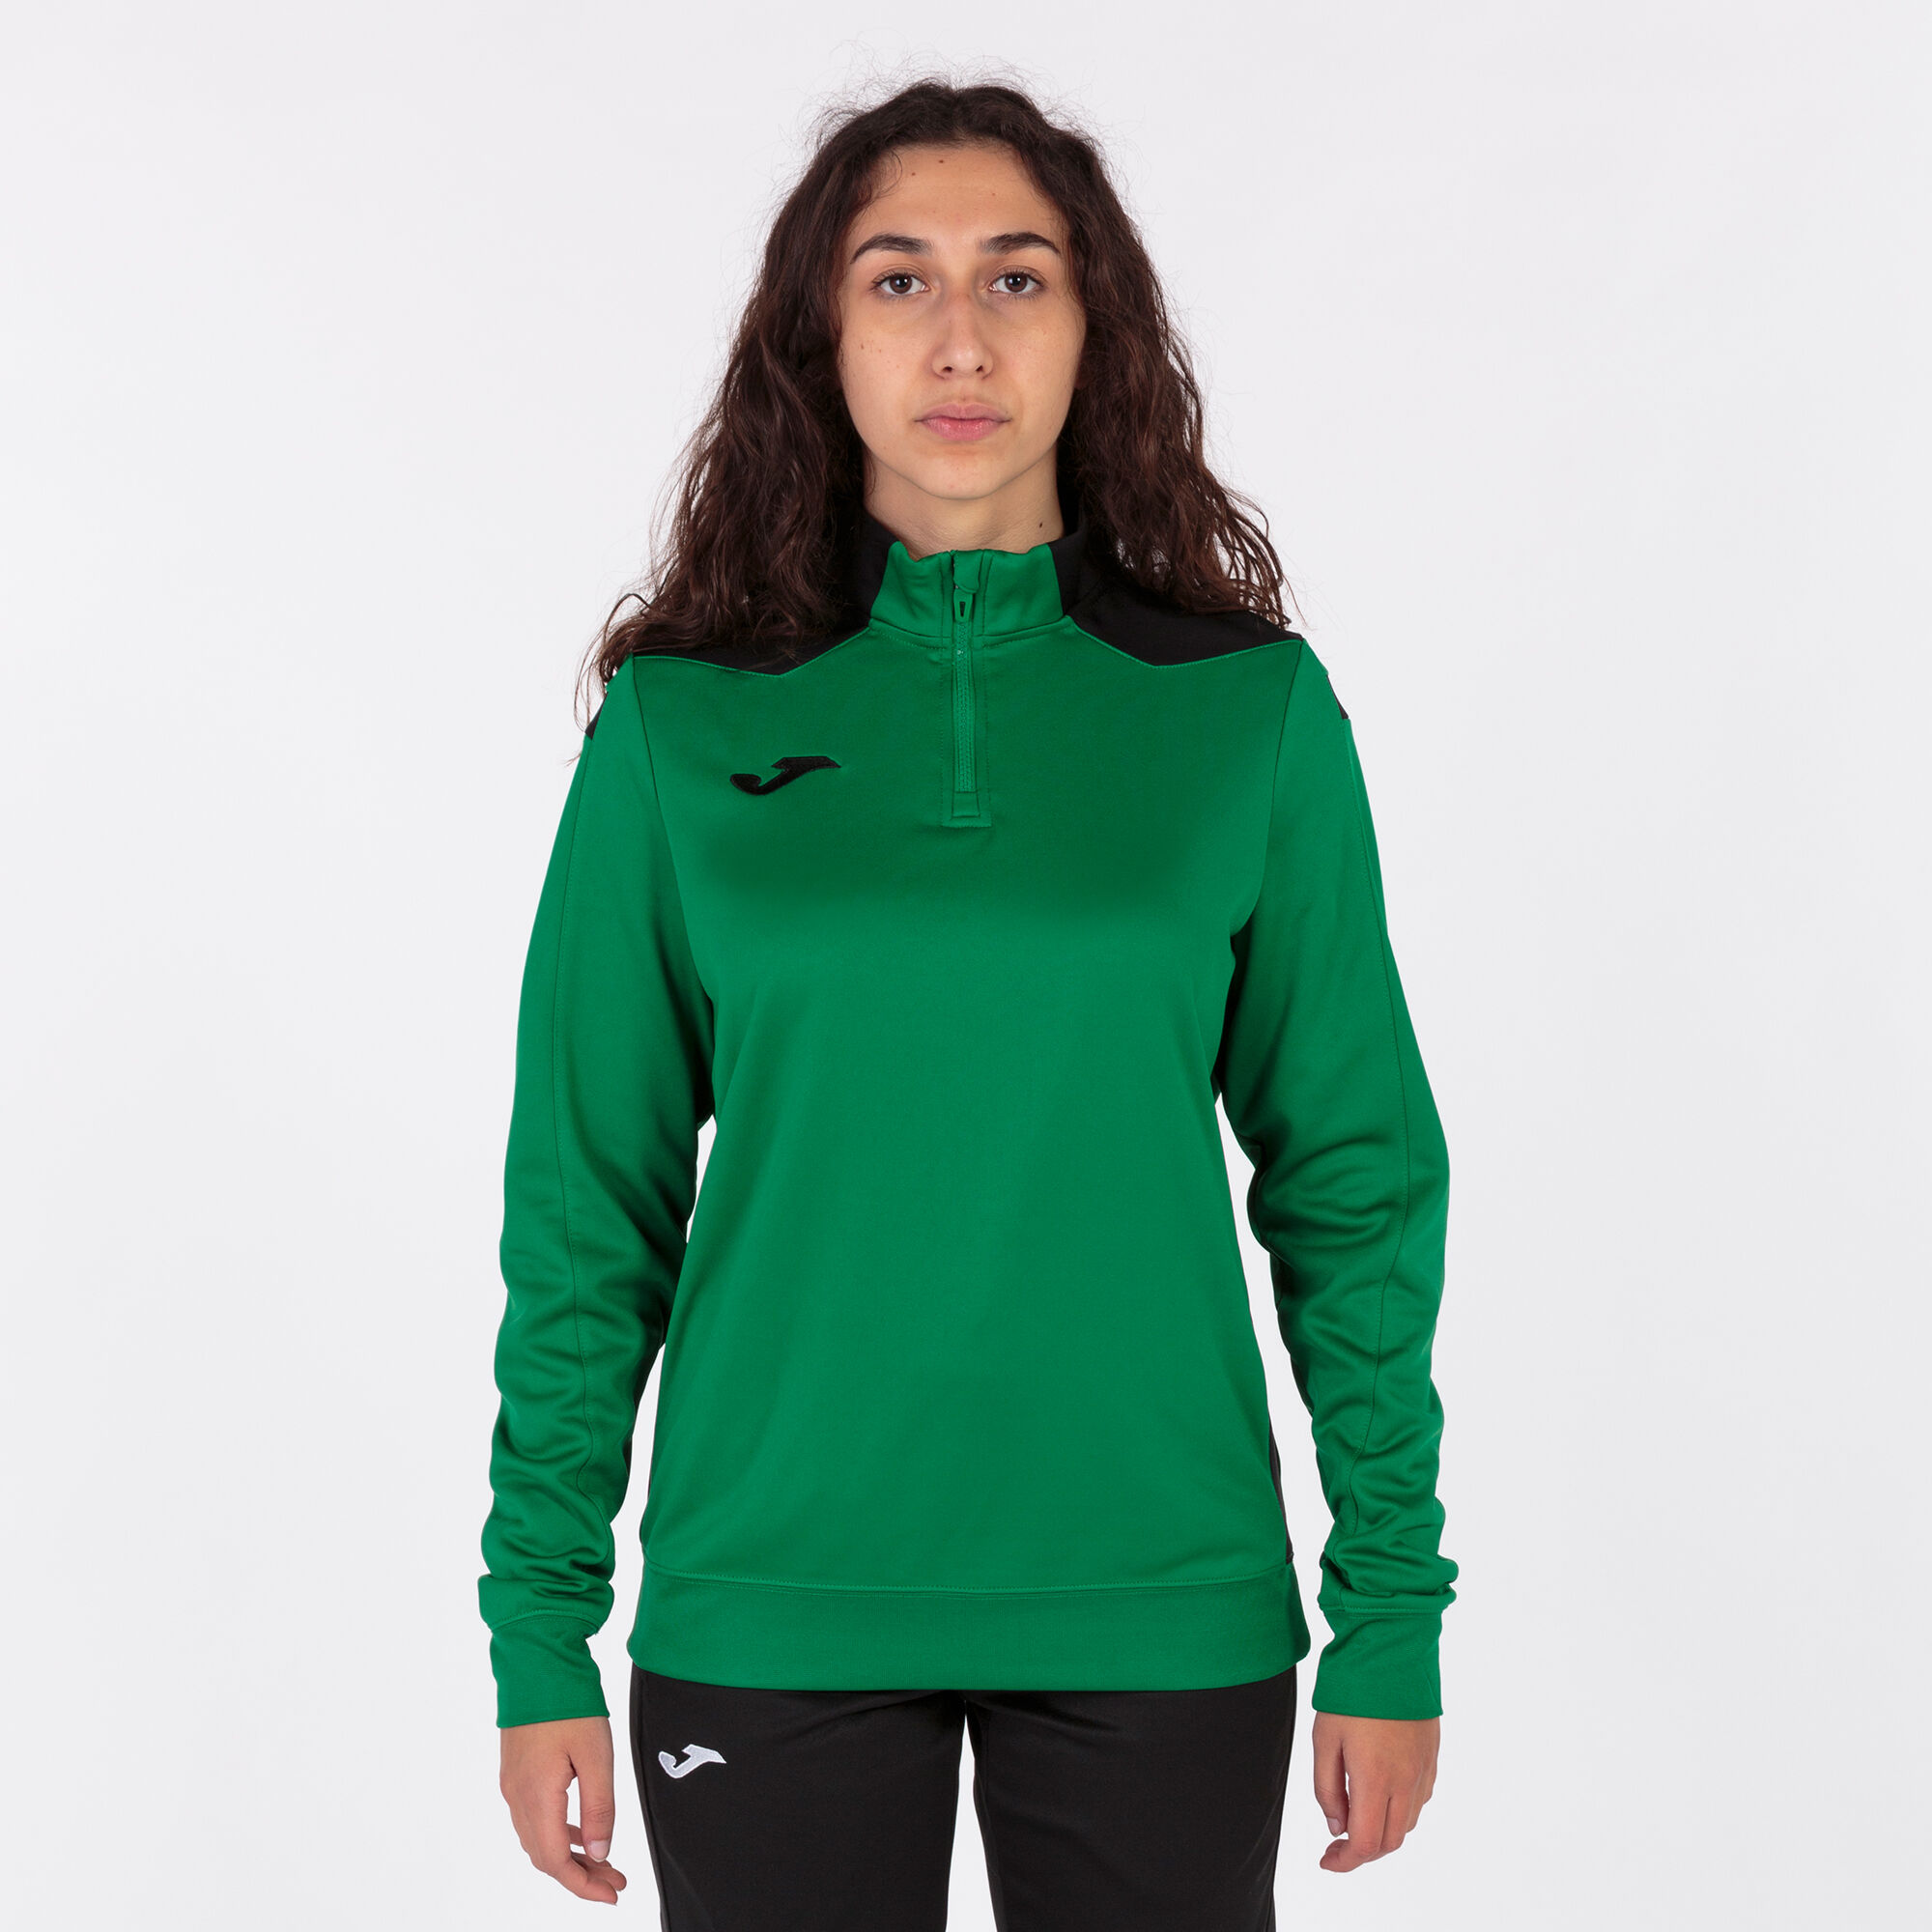 Sweat-shirt femme Championship VI vert noir